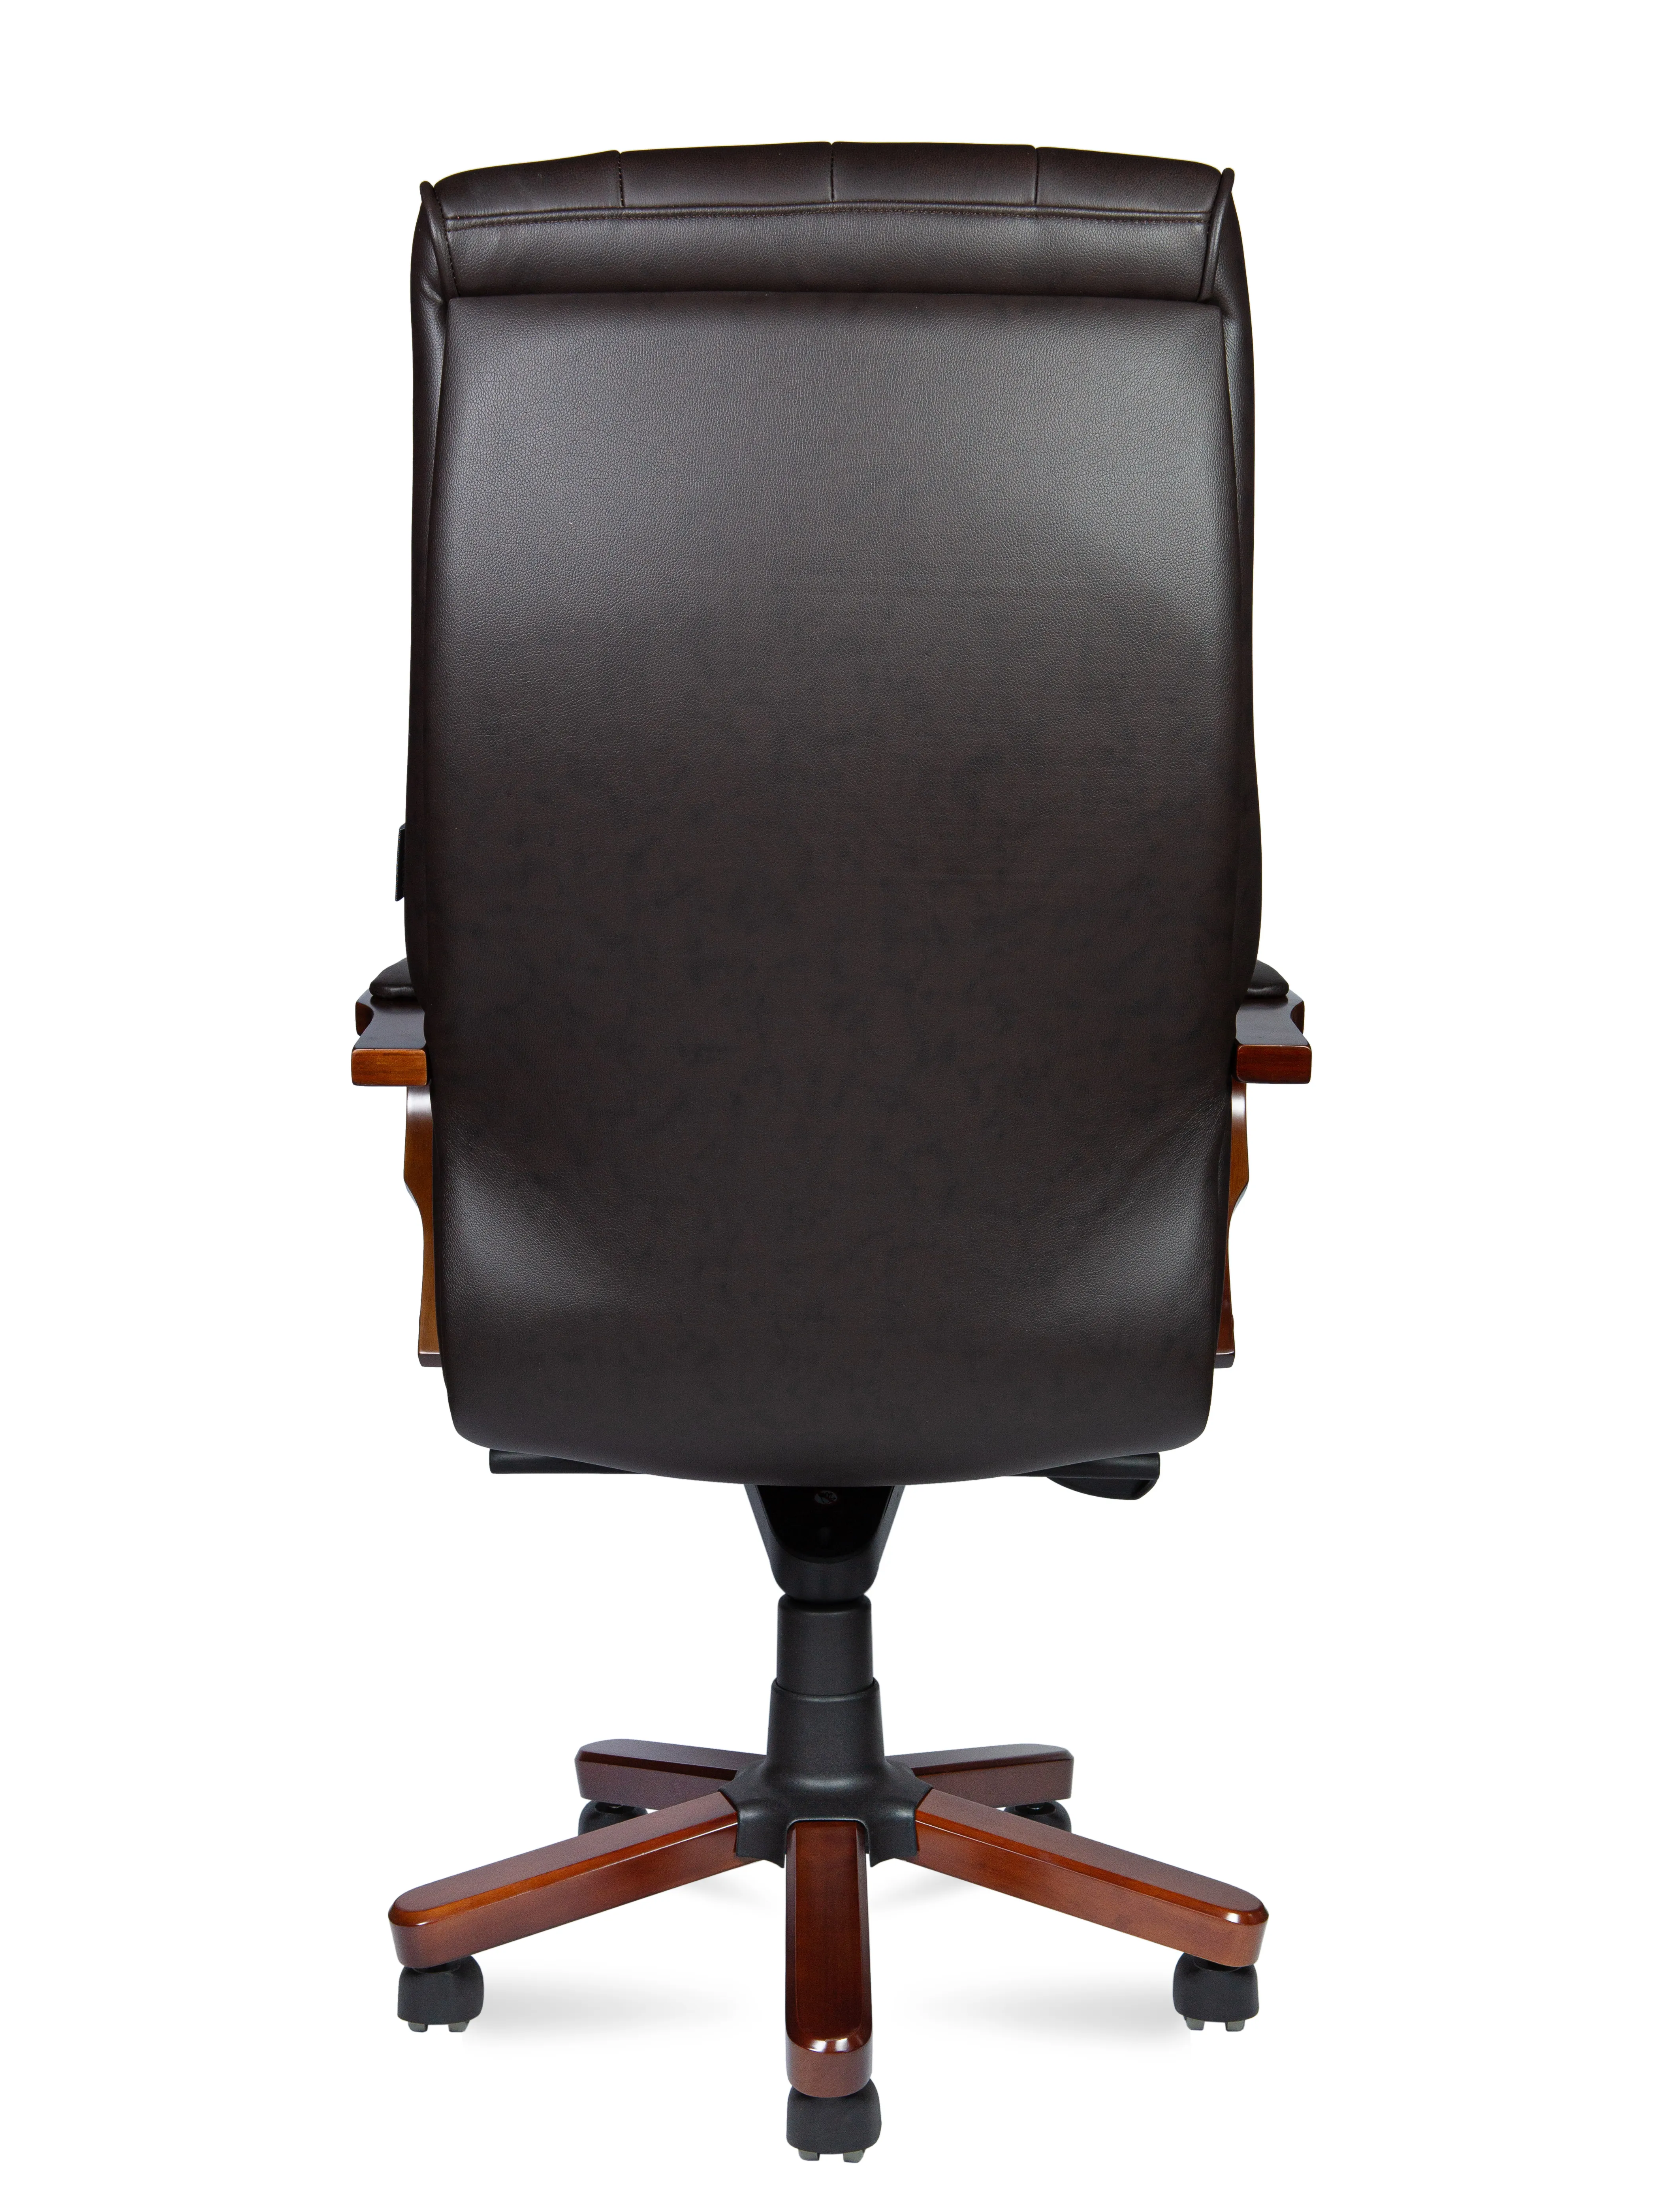 Кресло руководителя NORDEN Боттичелли кожа темно-коричневый P2338-L0828 leather